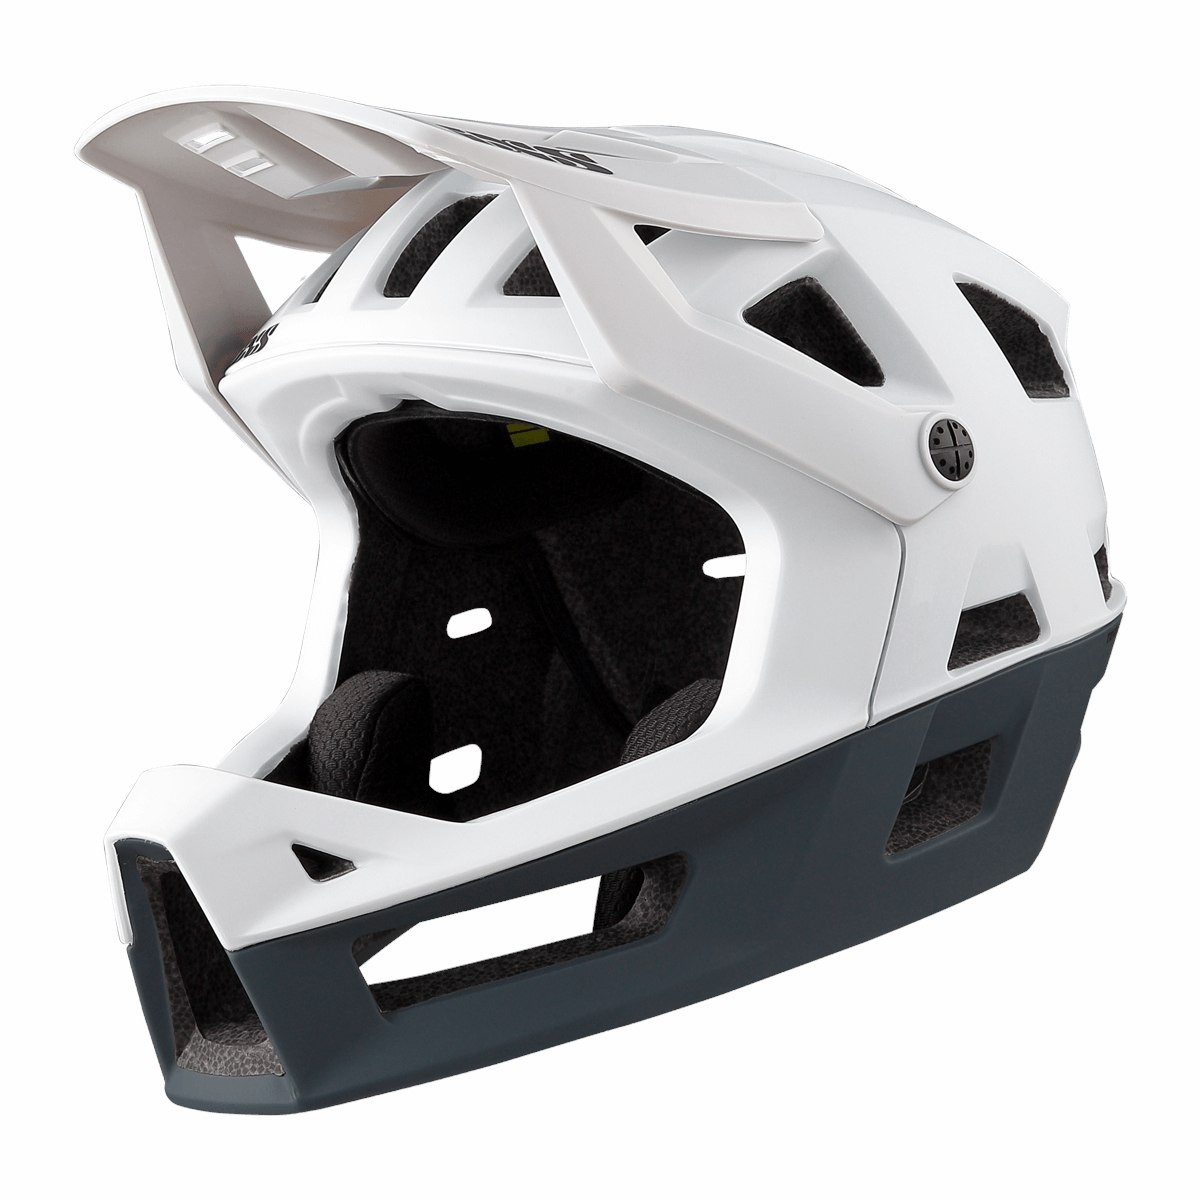 Image of iXS Trigger Fullface Helmet - white